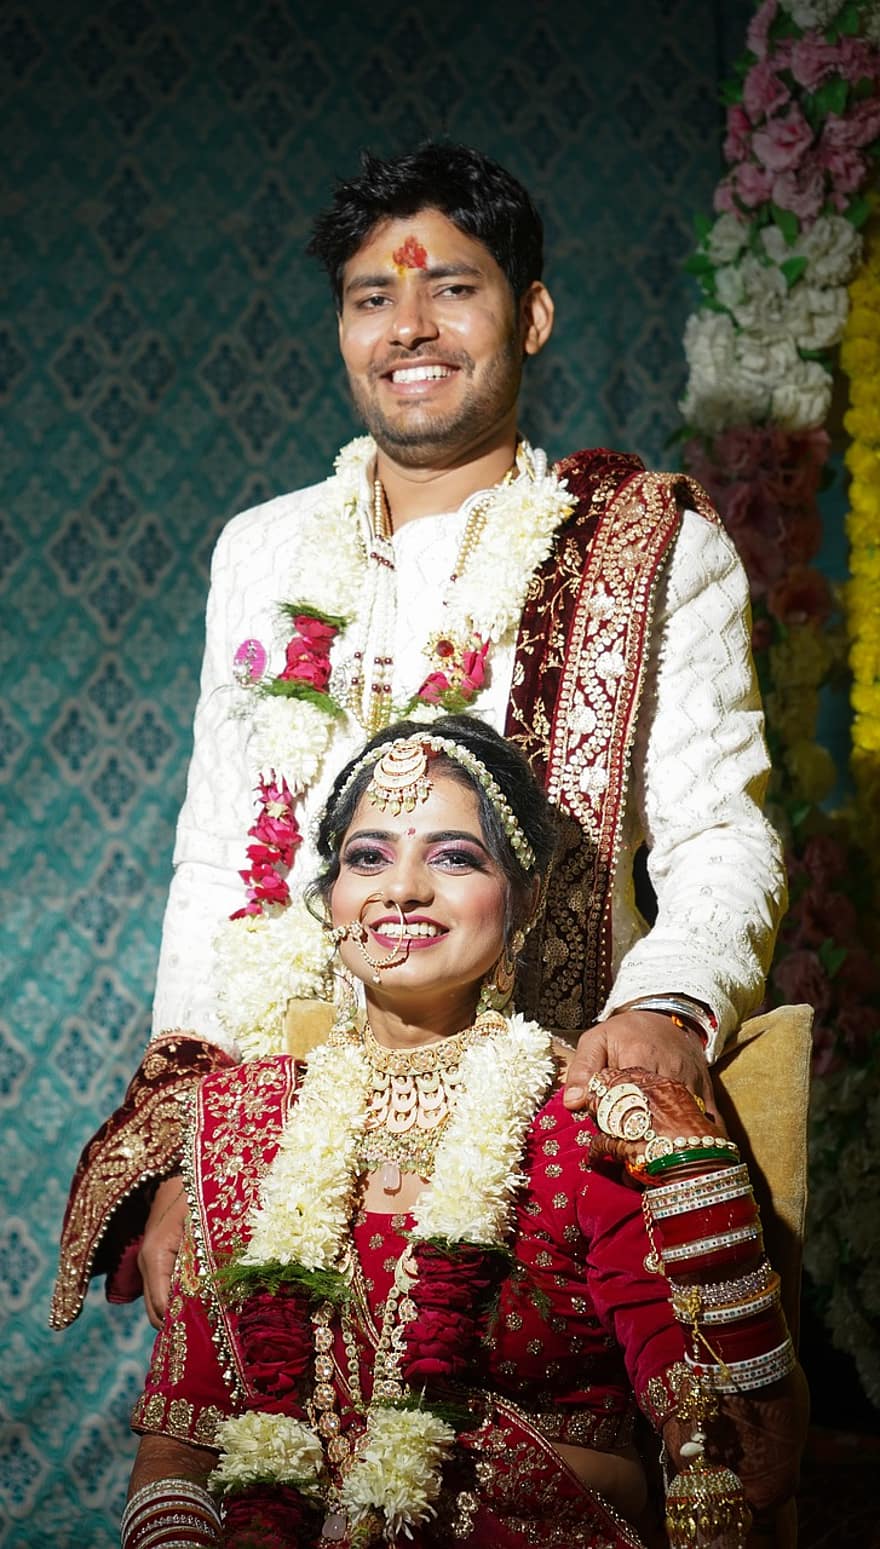 brud, brudgum, bröllopsdag, bröllopsfotografering, indiskt bröllop, indisk brud, Indisk brudgum, brud brudgummen, förebröllop, bröllopsbilder, Vacker indisk flicka